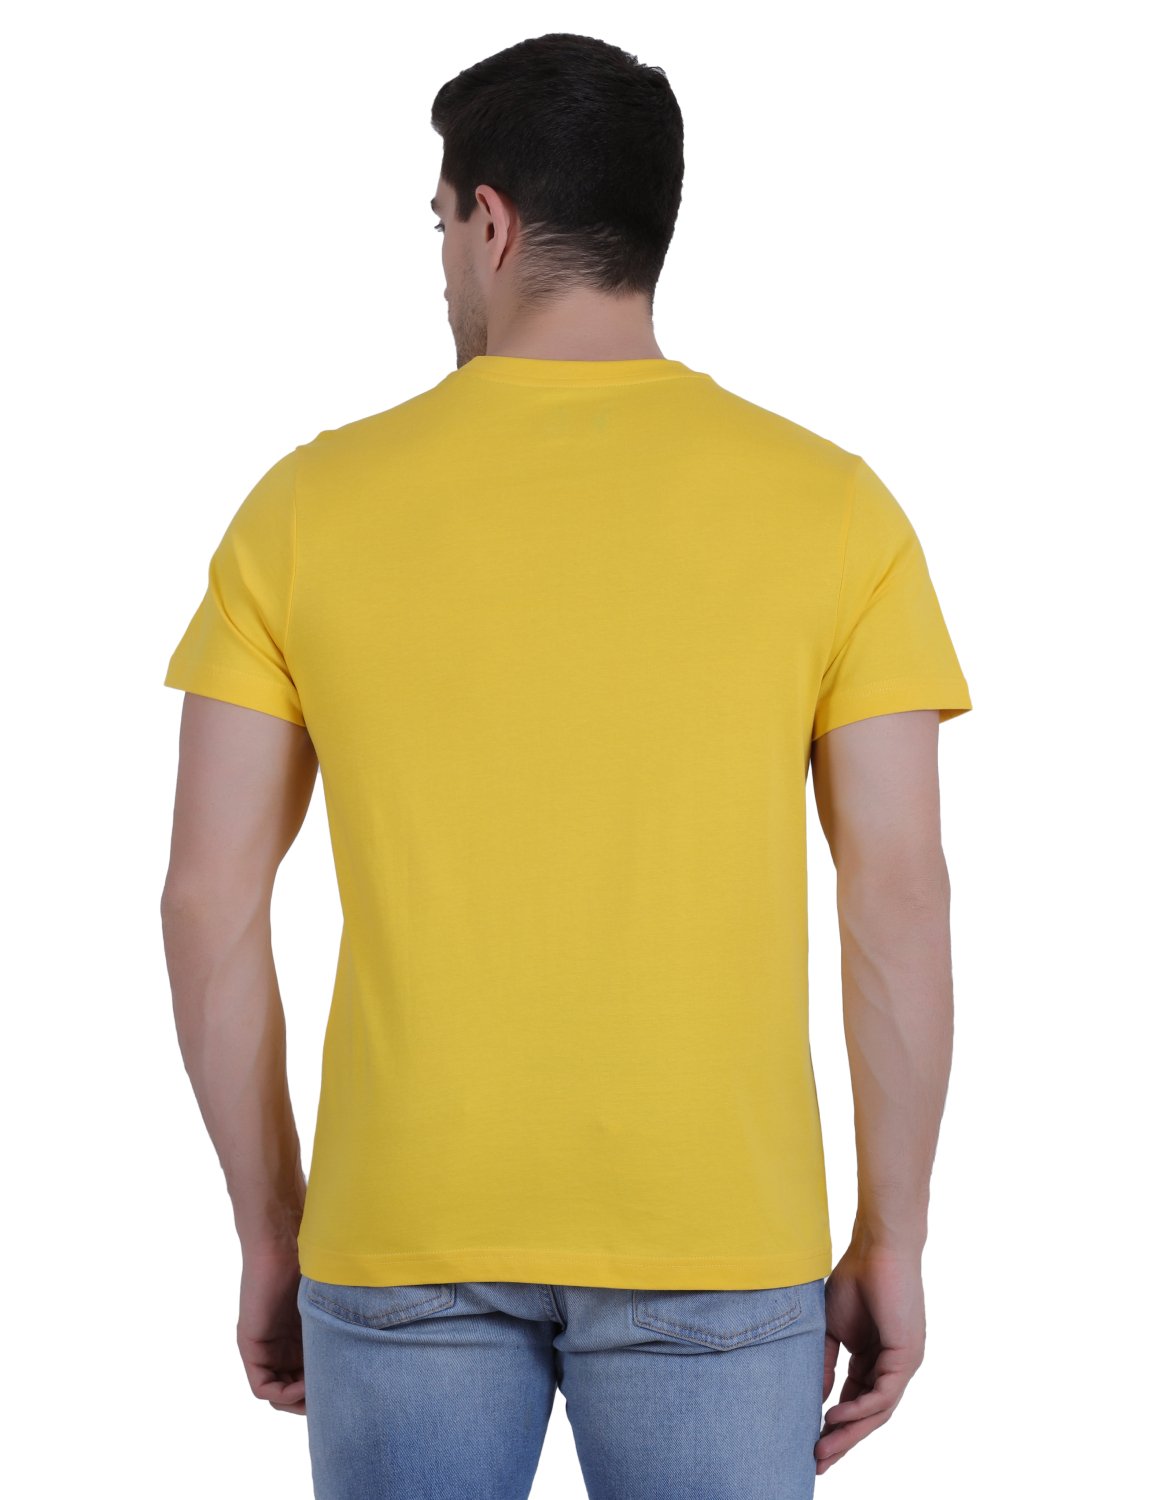 U.S. Polo Assn. Cotton Casual Yellow T-shirt For Men - Stilento